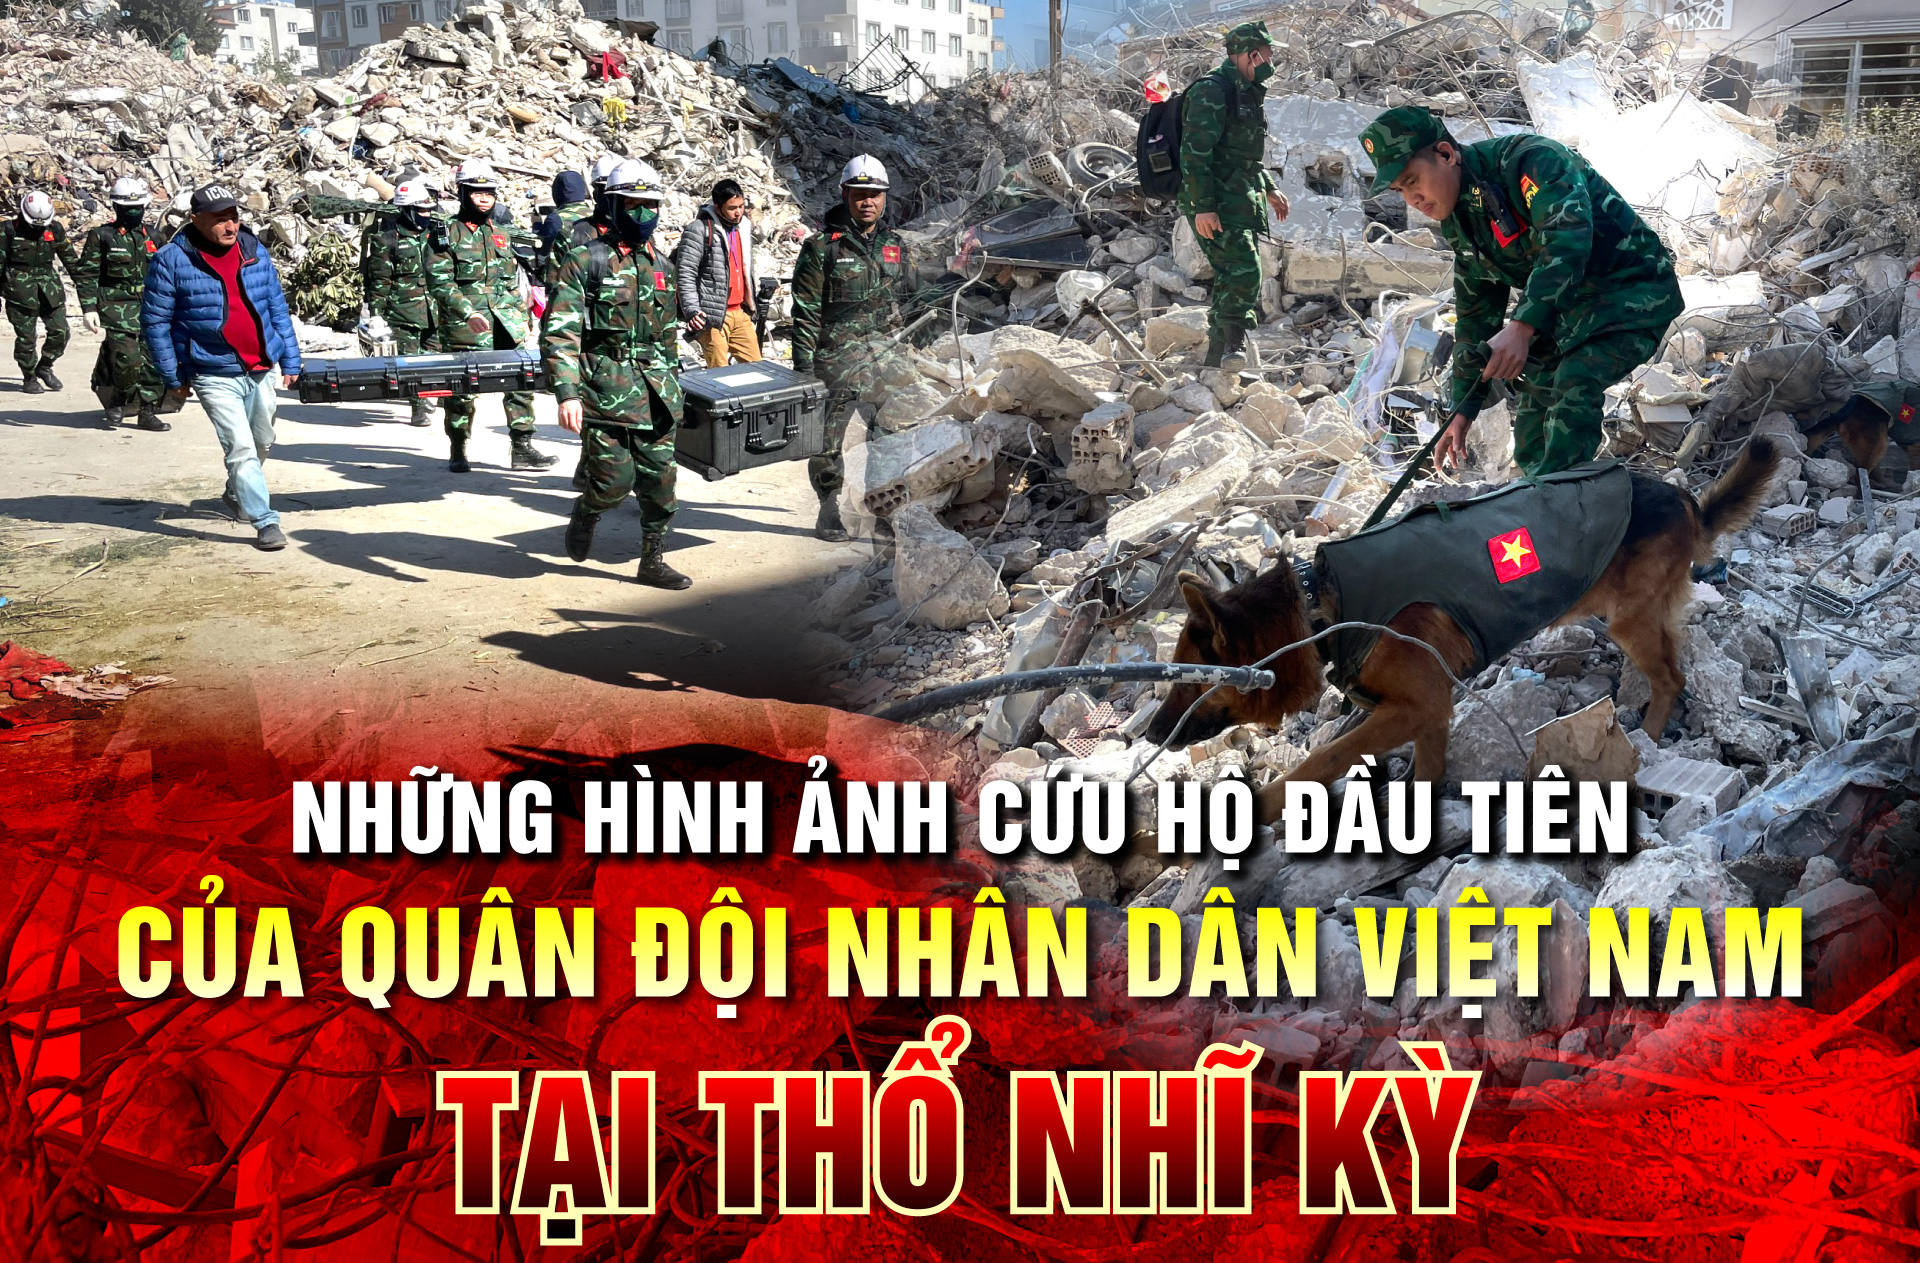 Những hình ảnh cứu hộ đầu tiên của QĐND Việt Nam tại Thổ Nhĩ Kỳ